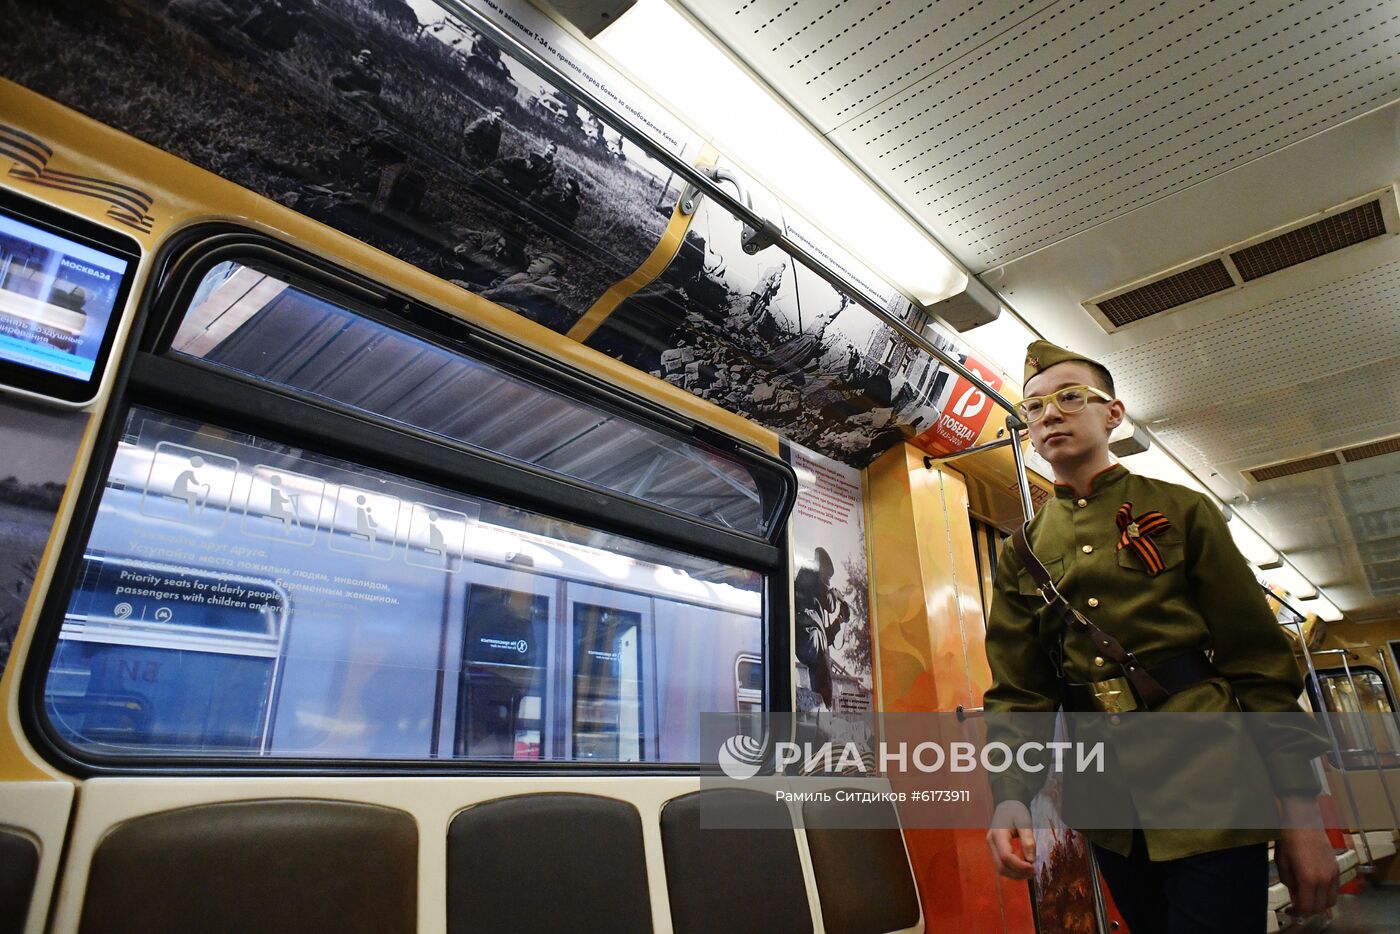 Запуск тематического поезда метро "Путь к Победе" 